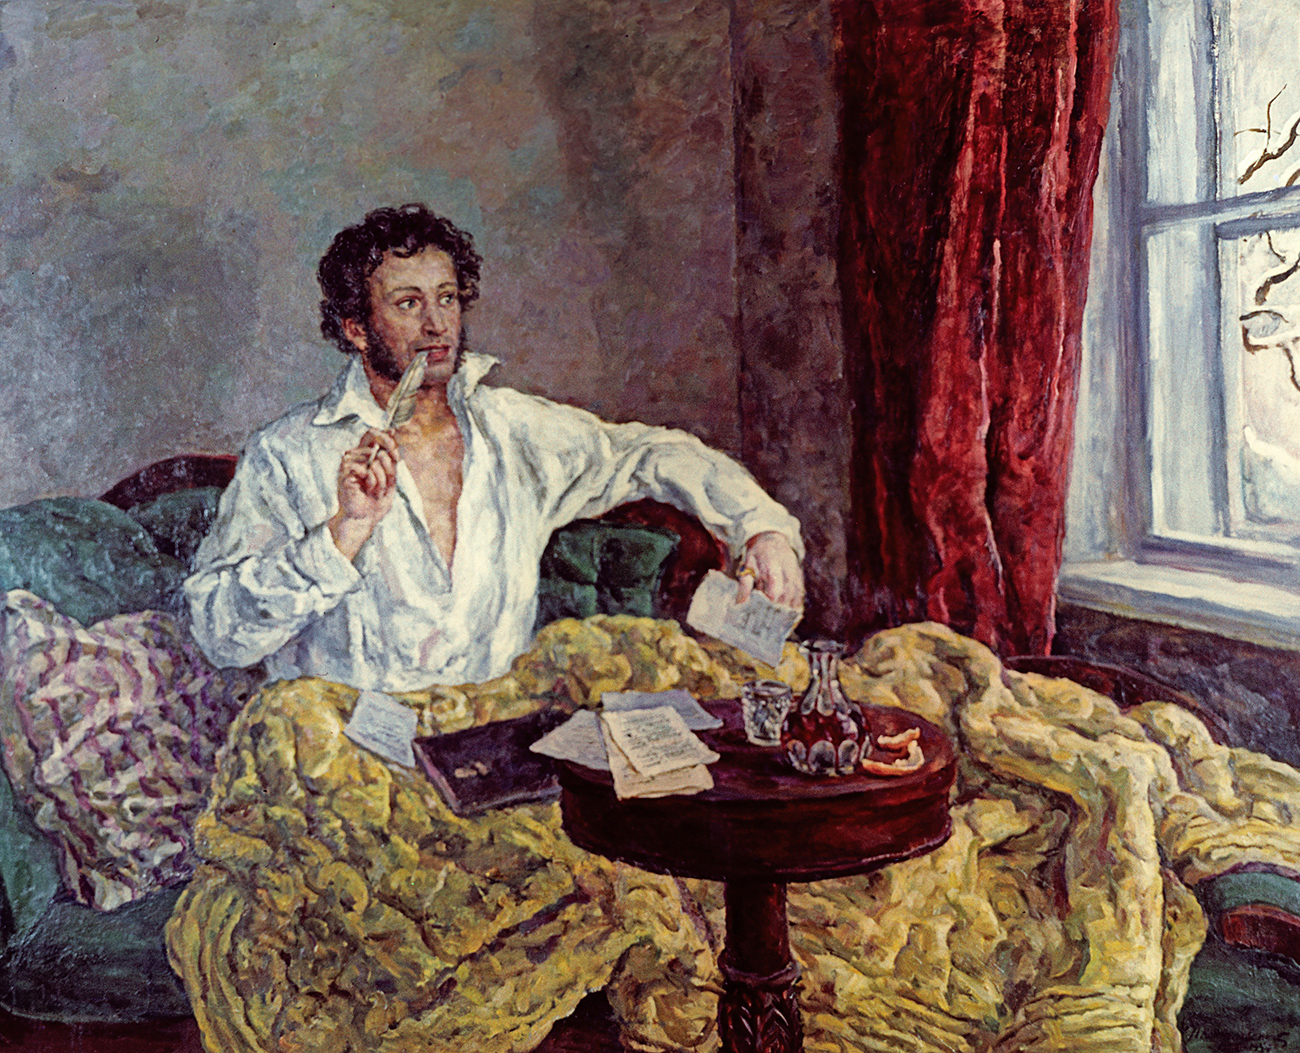 Репродукция на картината на худовника Петър Кончаловски "А.С. Пушкин"(1932 г.)